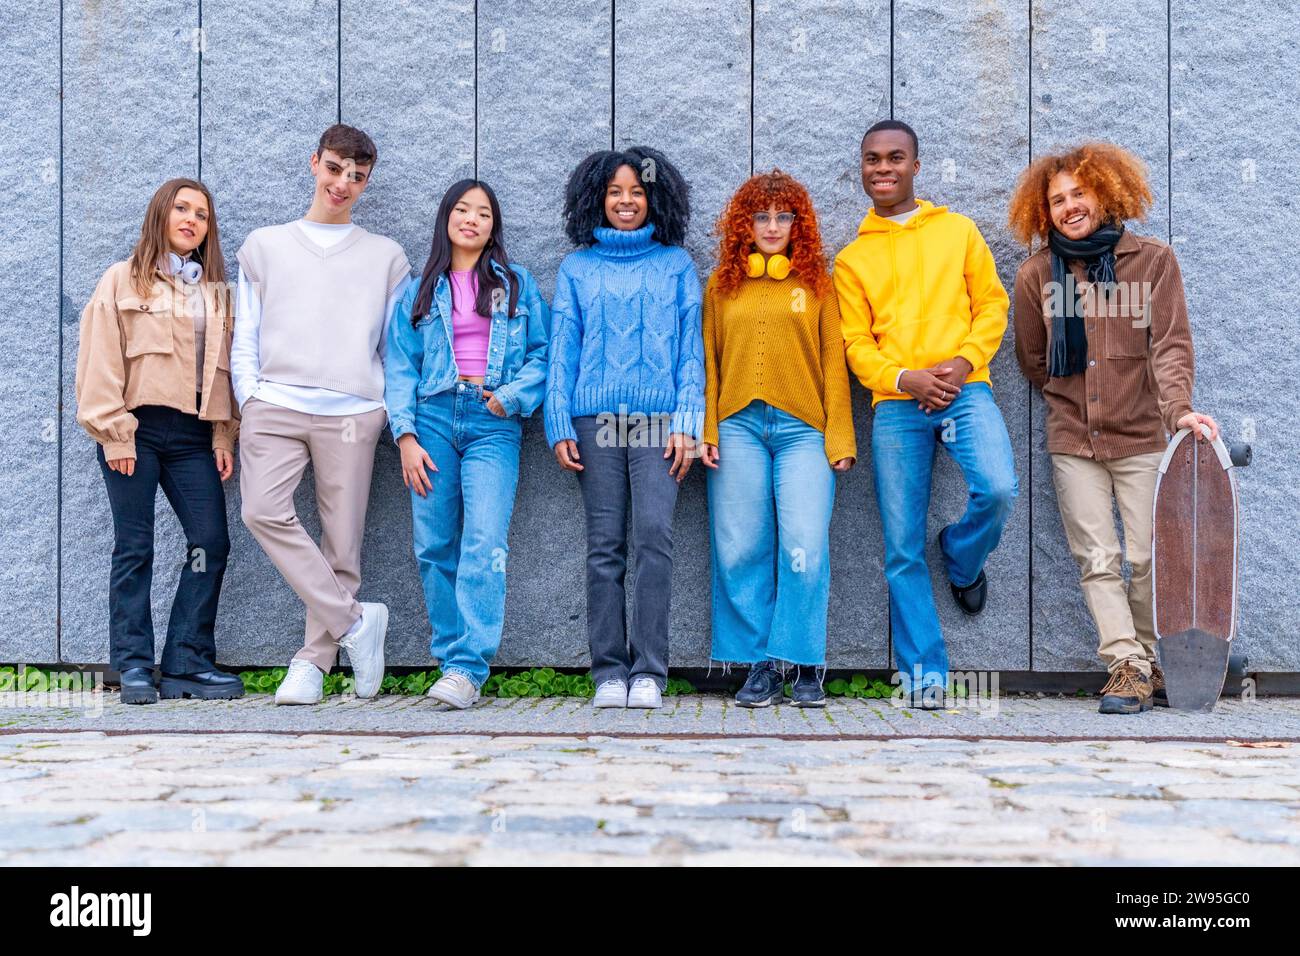 Porträt einer multiethnischen Gruppe von Freunden, die auf einer Stadtmauer stehen Stockfoto